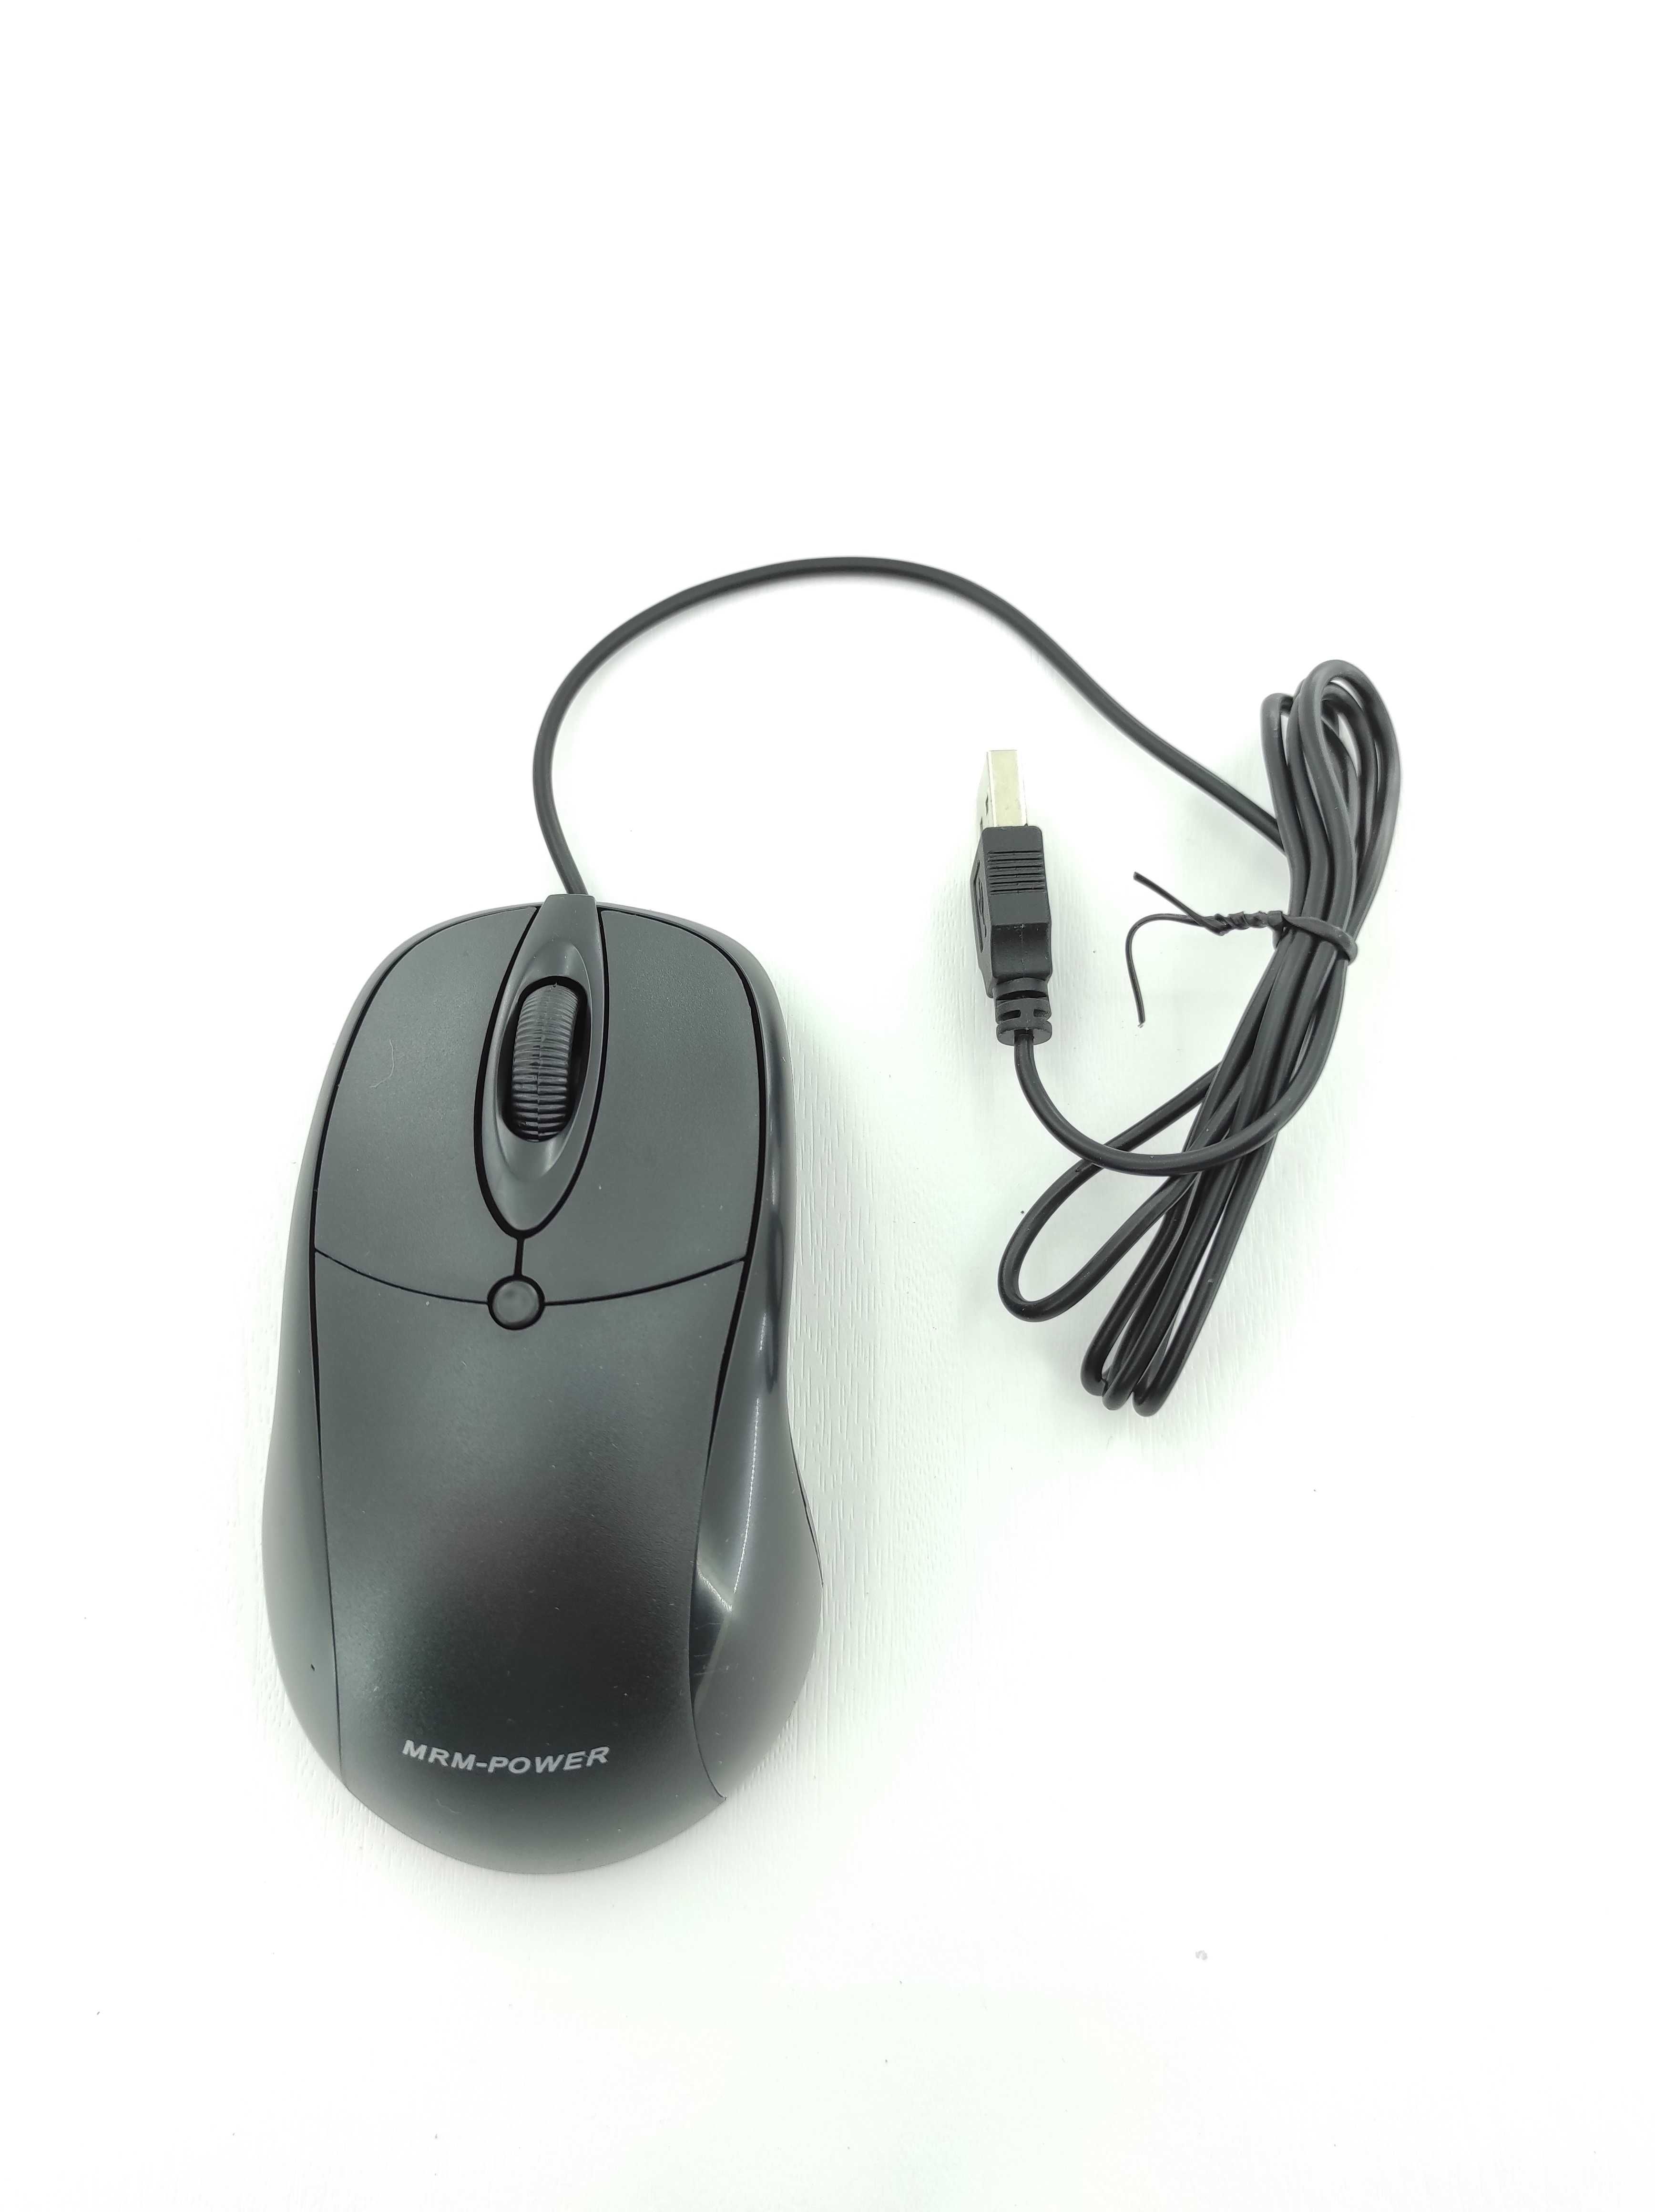 MRM-POWER MR-020, Тип Мыши: Оптическая, USB. Разрешение: 800dpi,